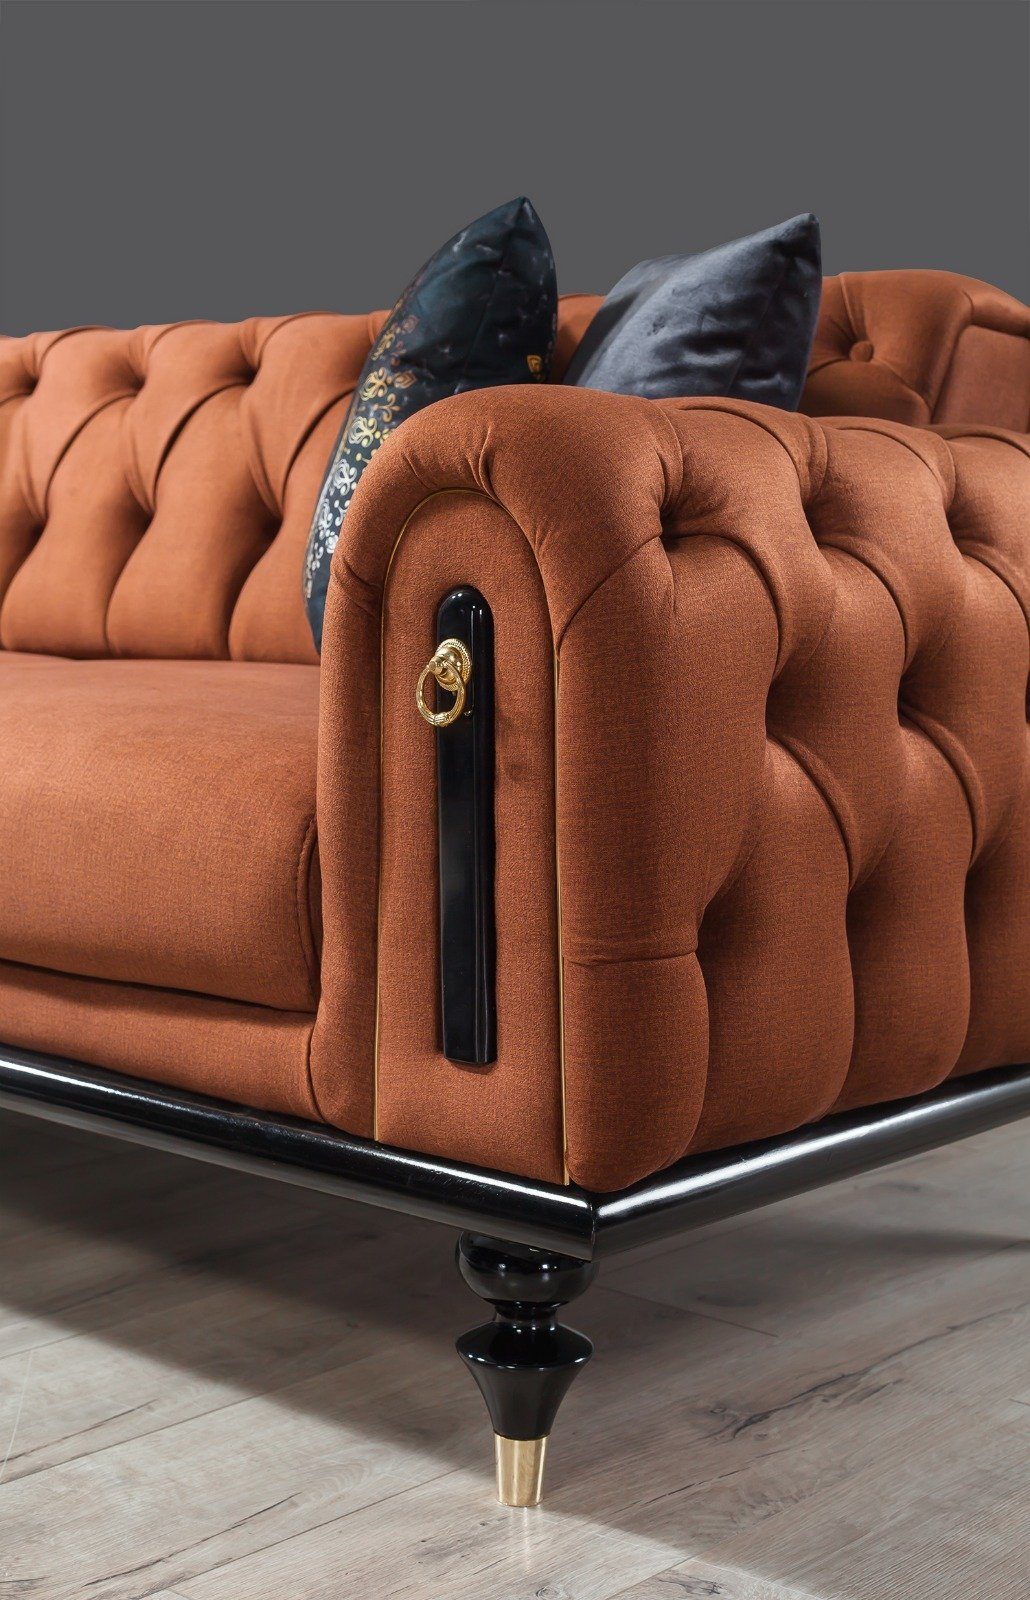 Möbel Villa (100% in Polyester) 1 2-Sitzer, Sofa Quality Made Stk. Terracotta Pablo, Luxus-Microfaser Turkey,